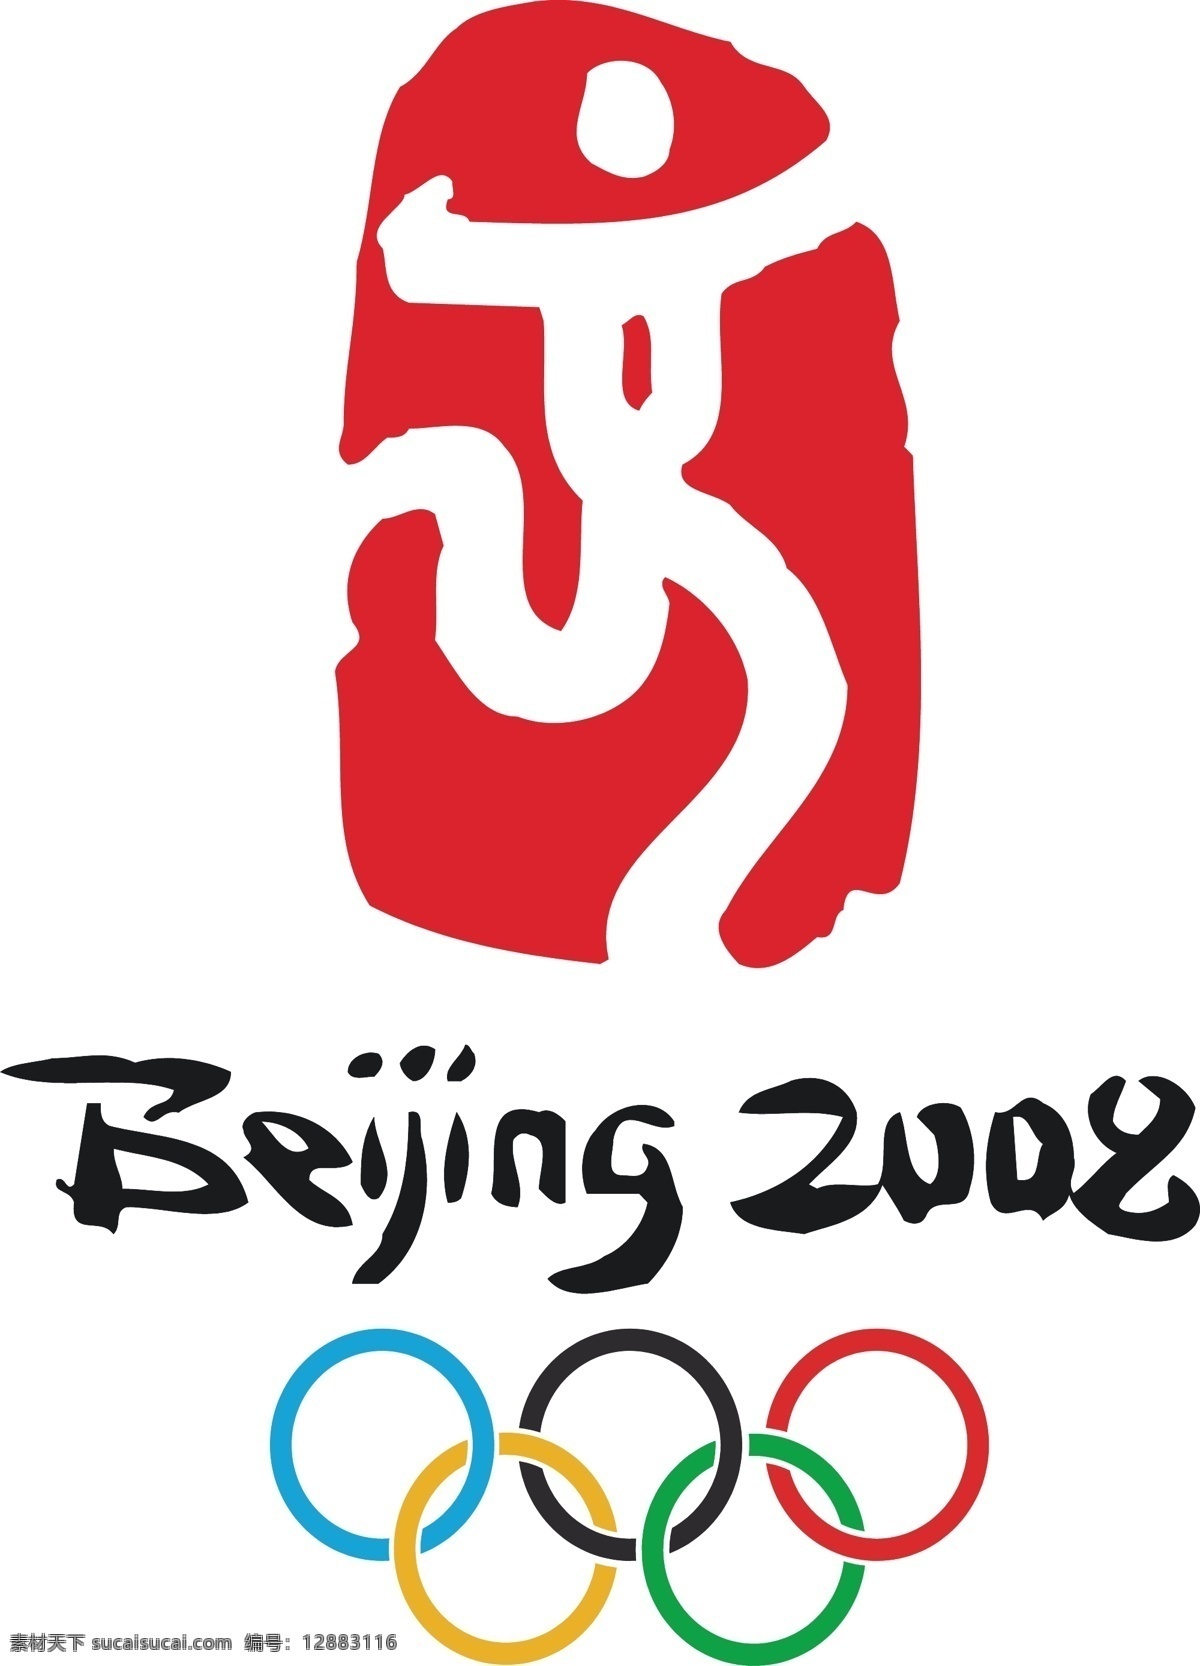 标识标志图标 公共标识标志 矢量图库 beijing 2008 奥运 logo 矢量 模板下载 psd源文件 logo设计